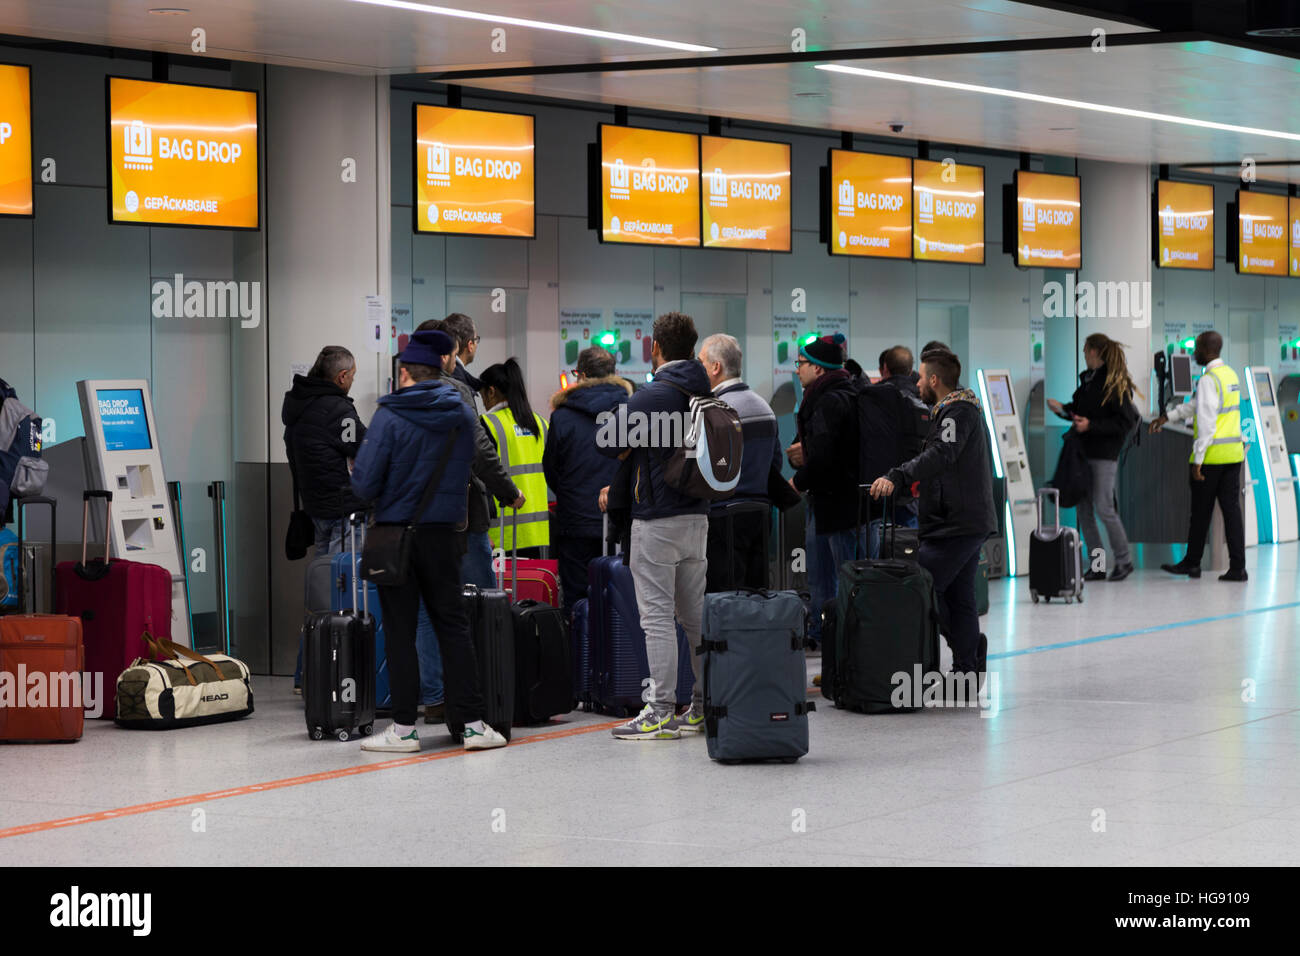 EasyJet Tasche Drop Passagiergepäck Drop off Punkt für Gepäck einchecken um Halt auf Flug eingecheckt werden. Flughafen Gatwick UK Stockfoto